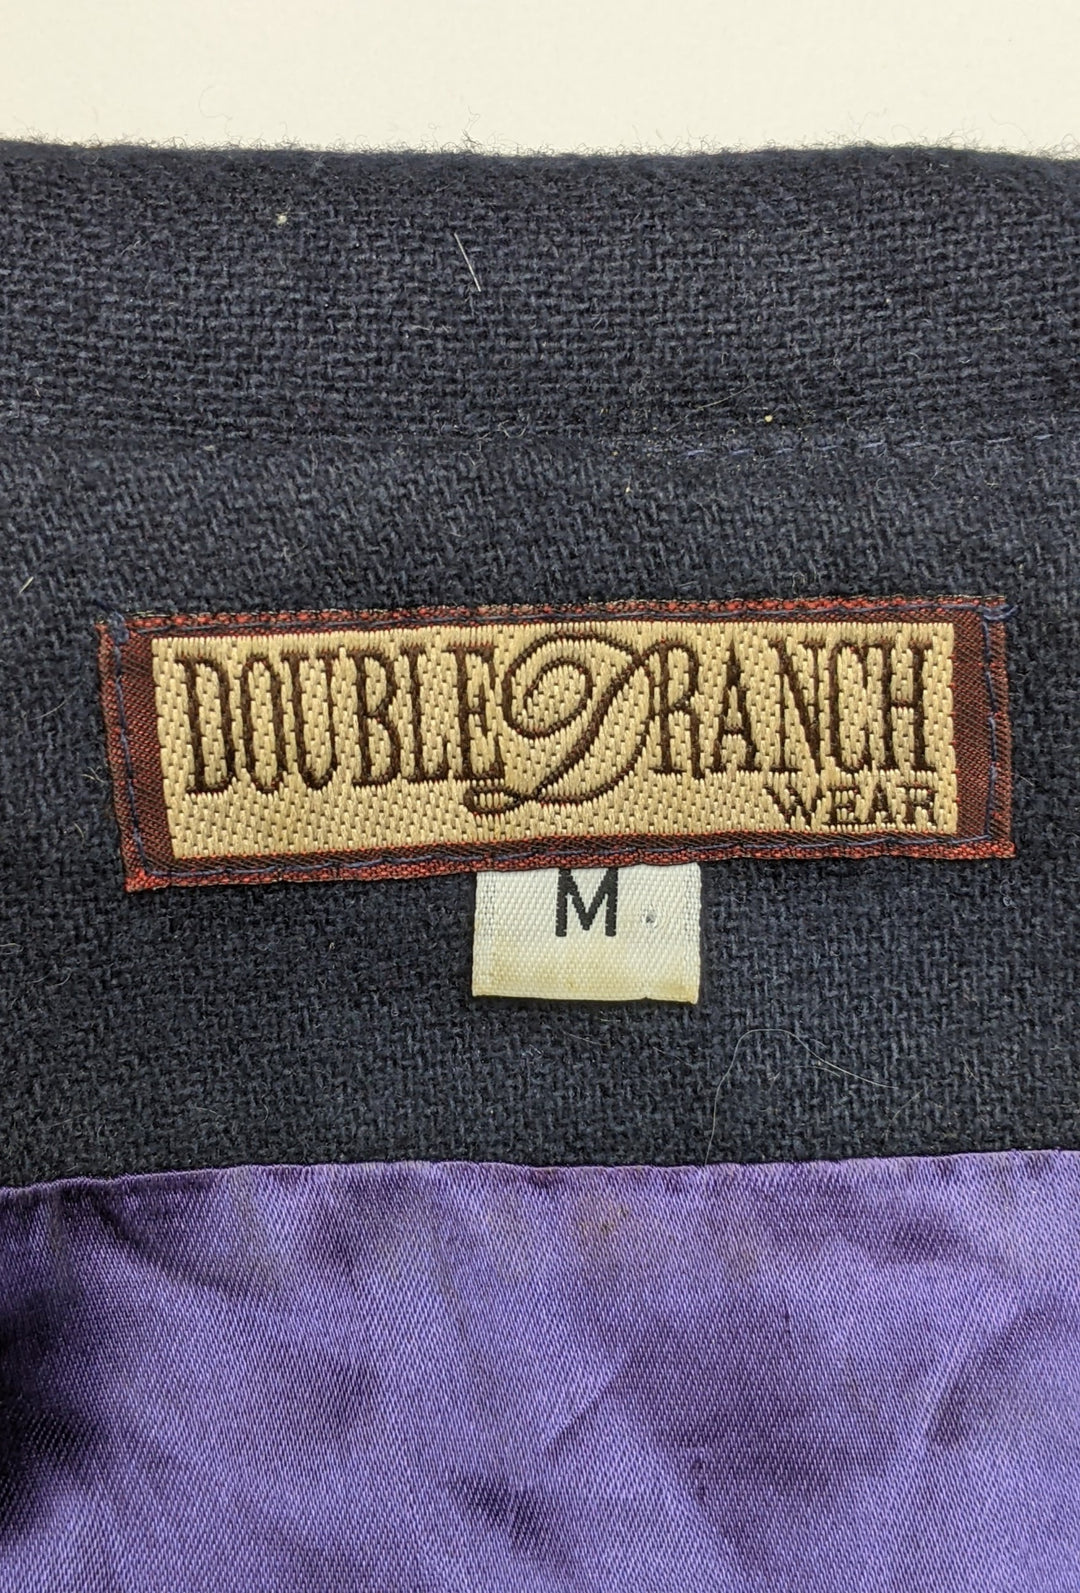 Double D Ranch Jacket 1 pc 1 lb B0202215 - Raghouse